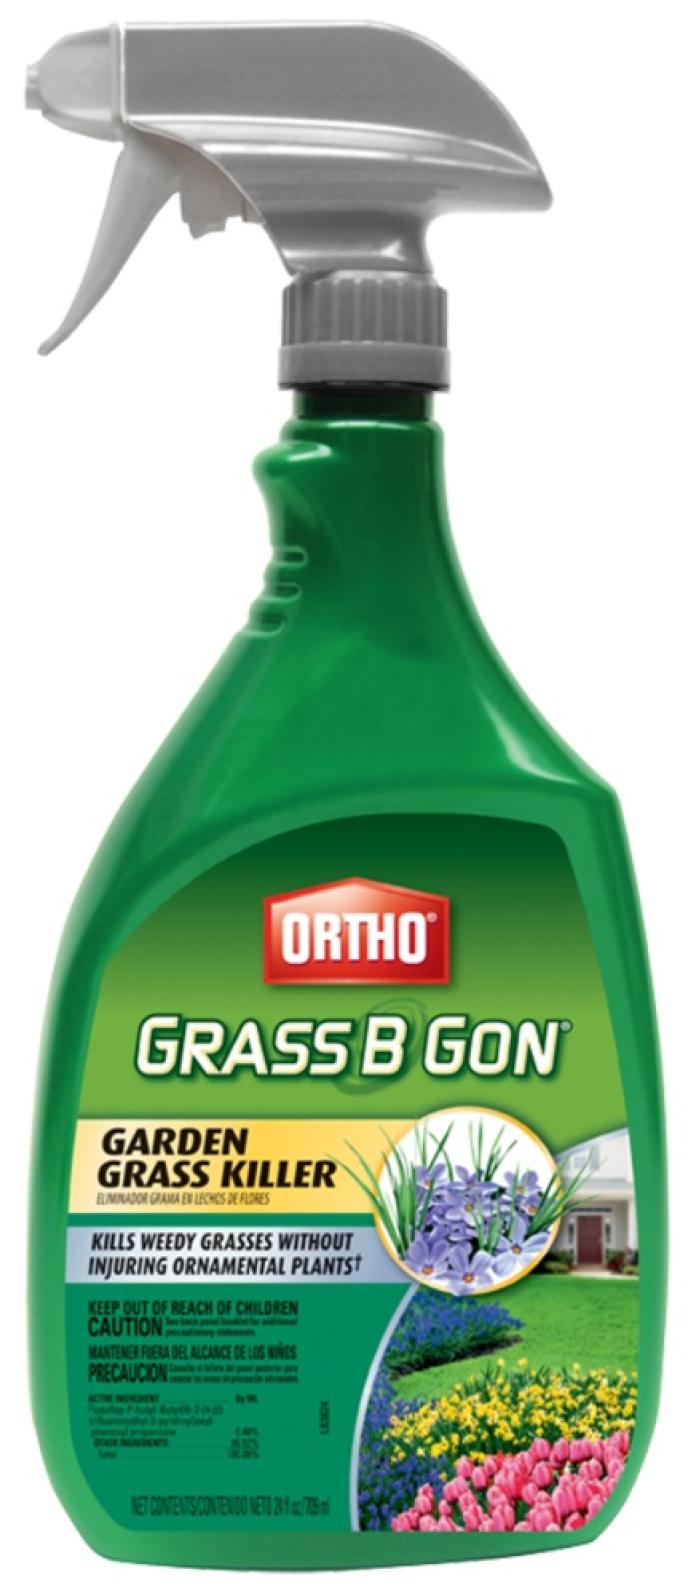 Ortho Grass B Gone Garden Grass Killer